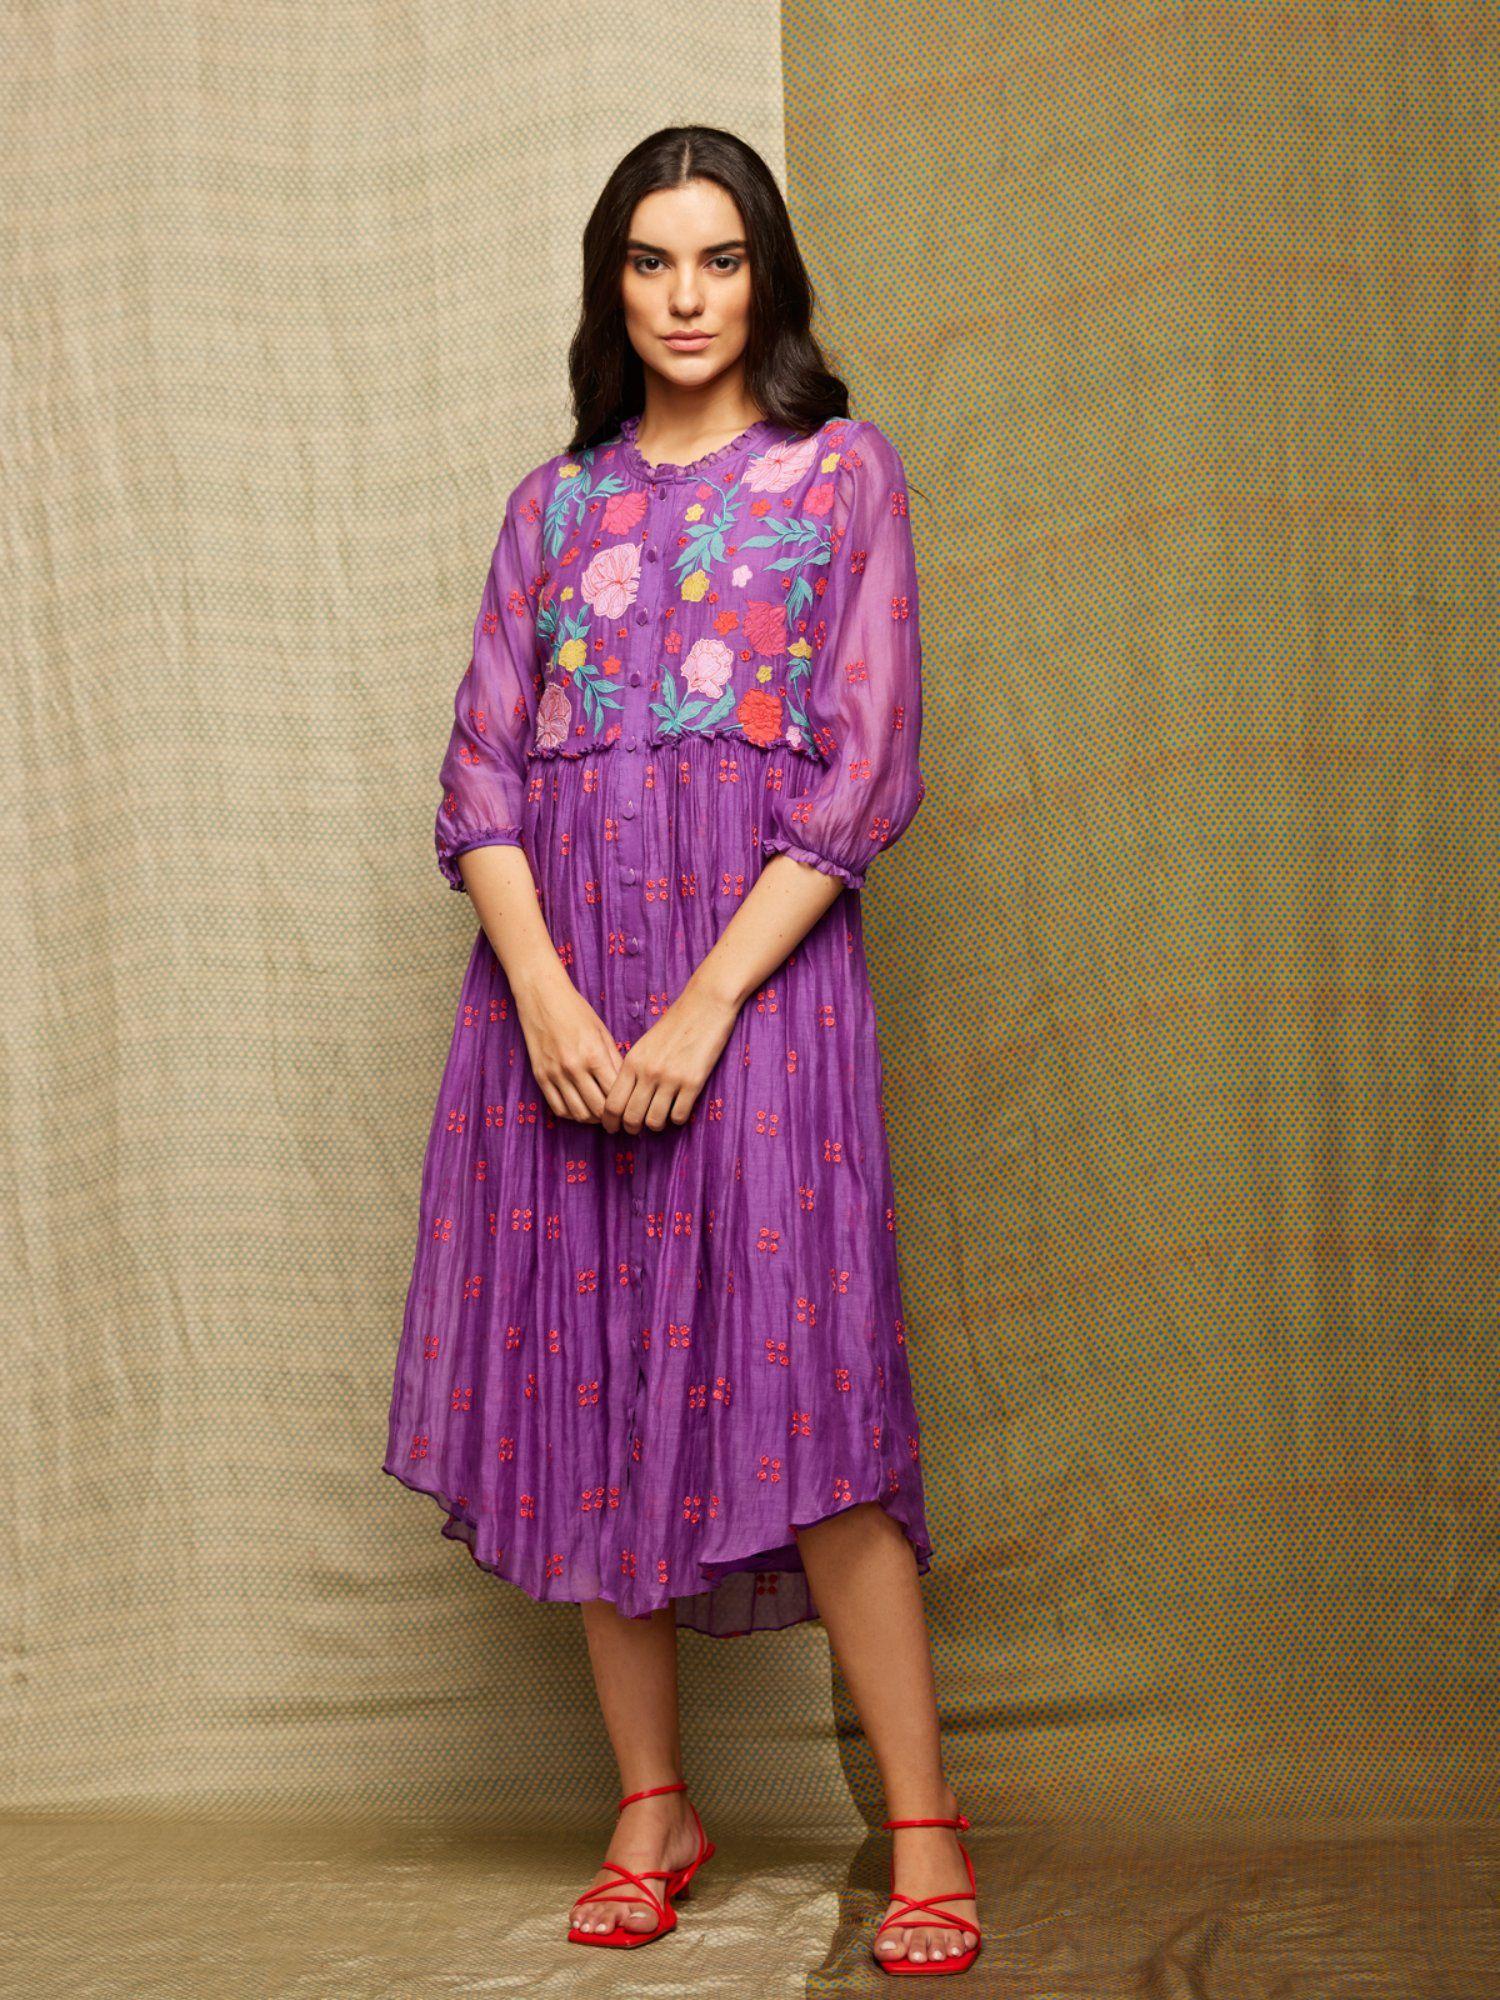 rose purple multi applique dress